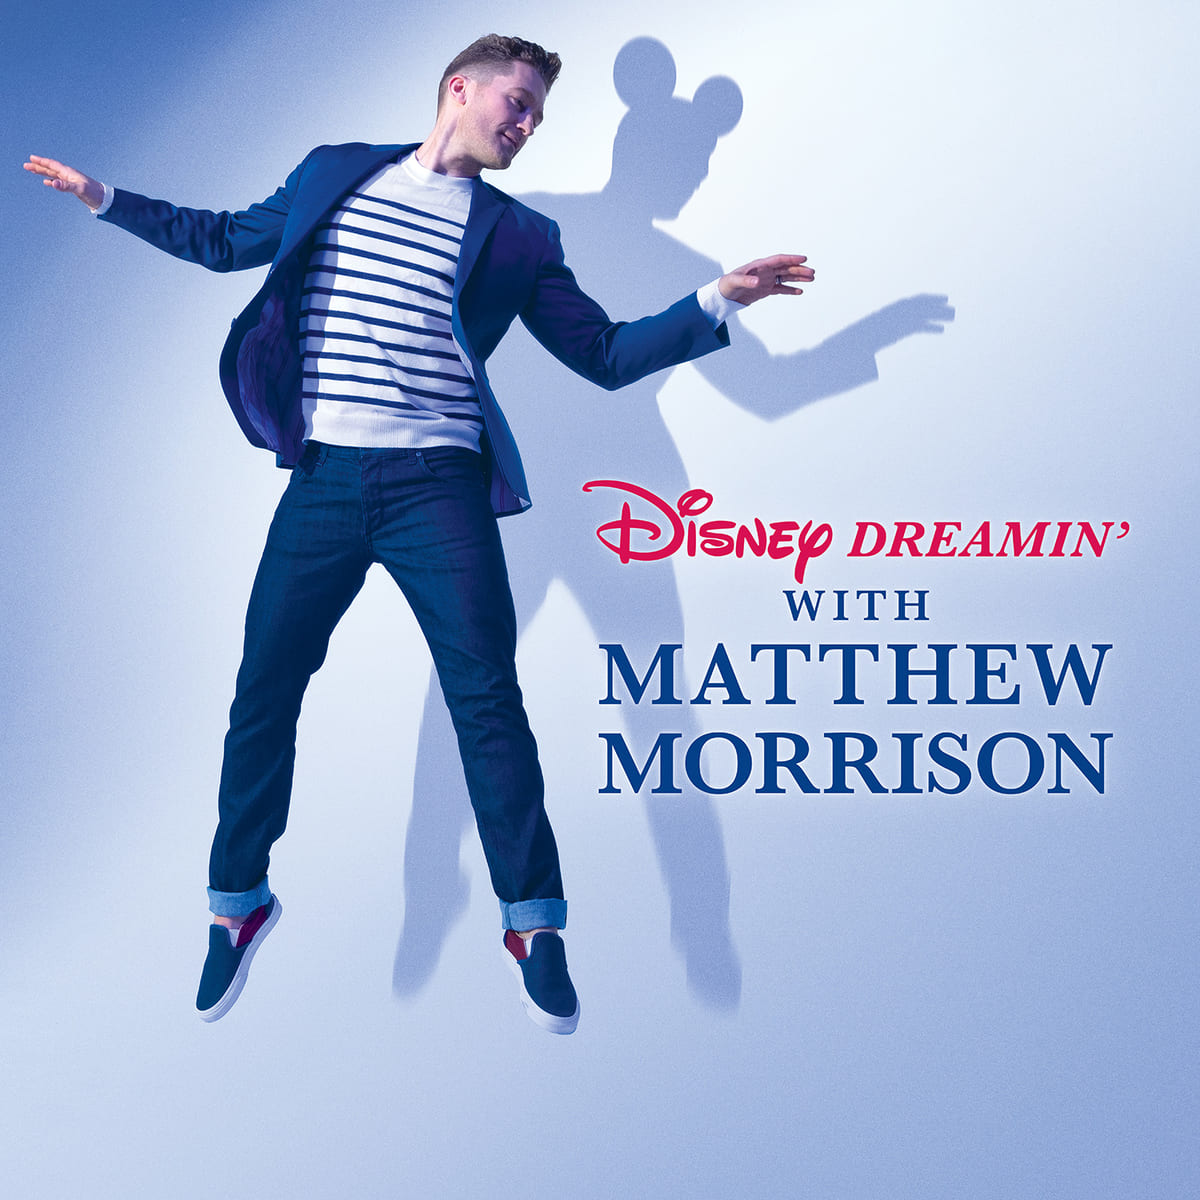 『ディズニー・ドリーミング with マシュー・モリソン』Disney Dreamin’ with Matthew Morrison